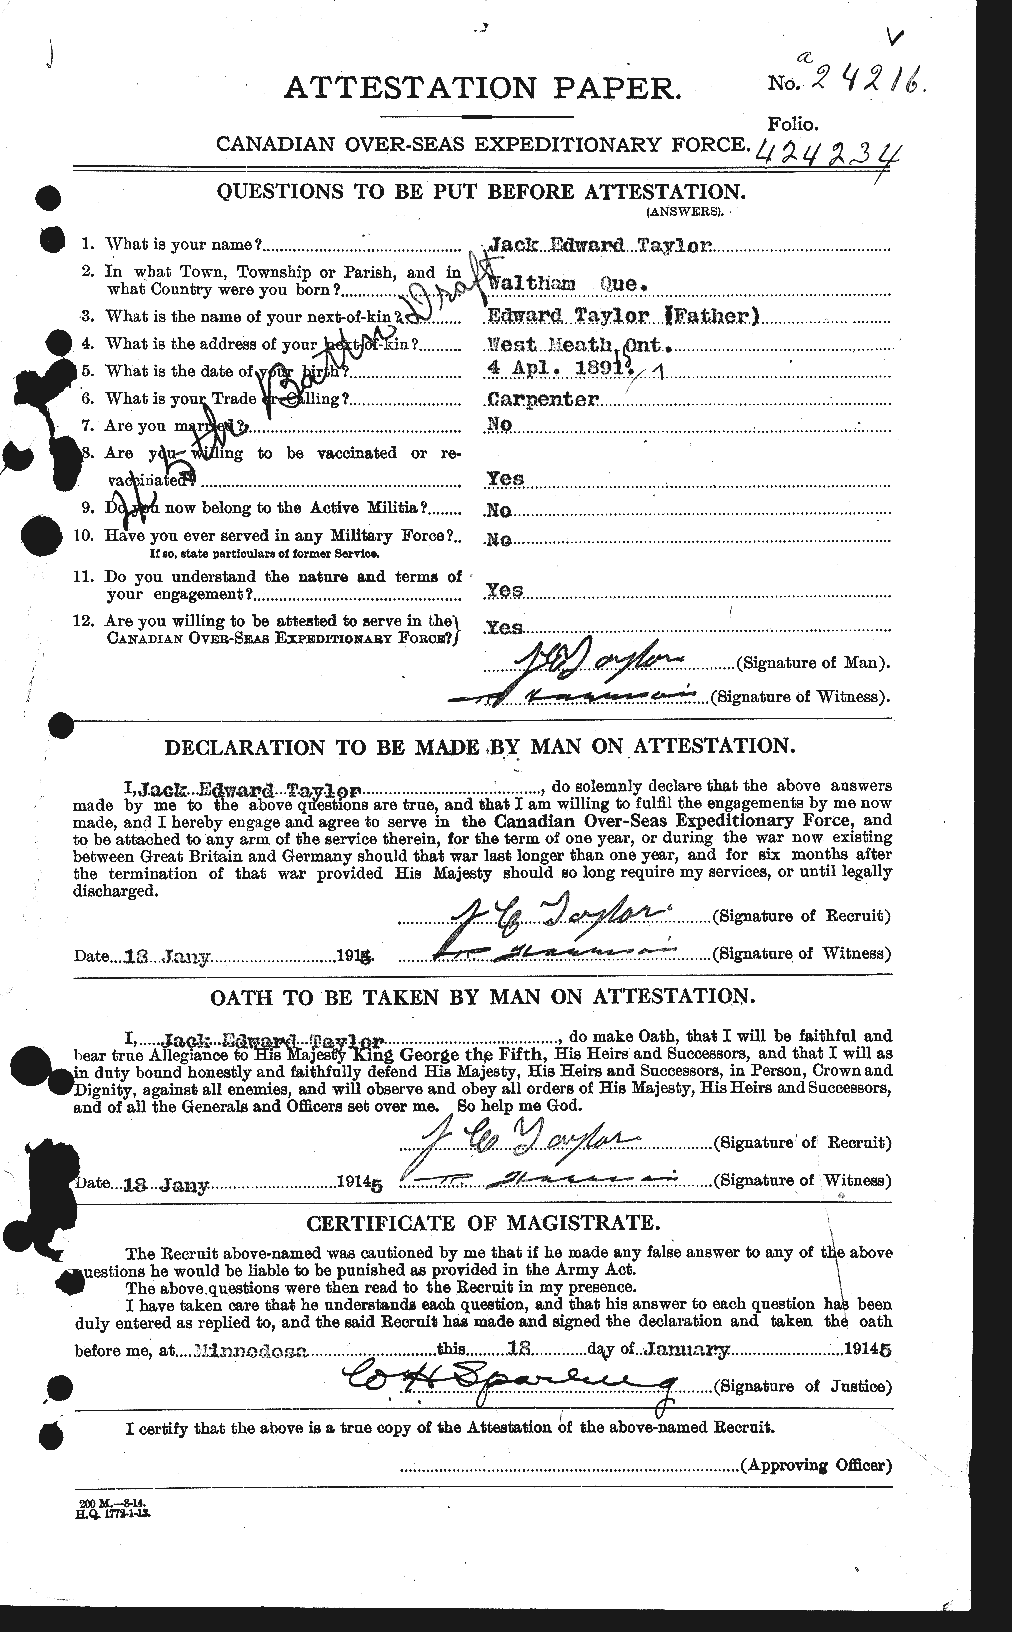 Dossiers du Personnel de la Première Guerre mondiale - CEC 626644a